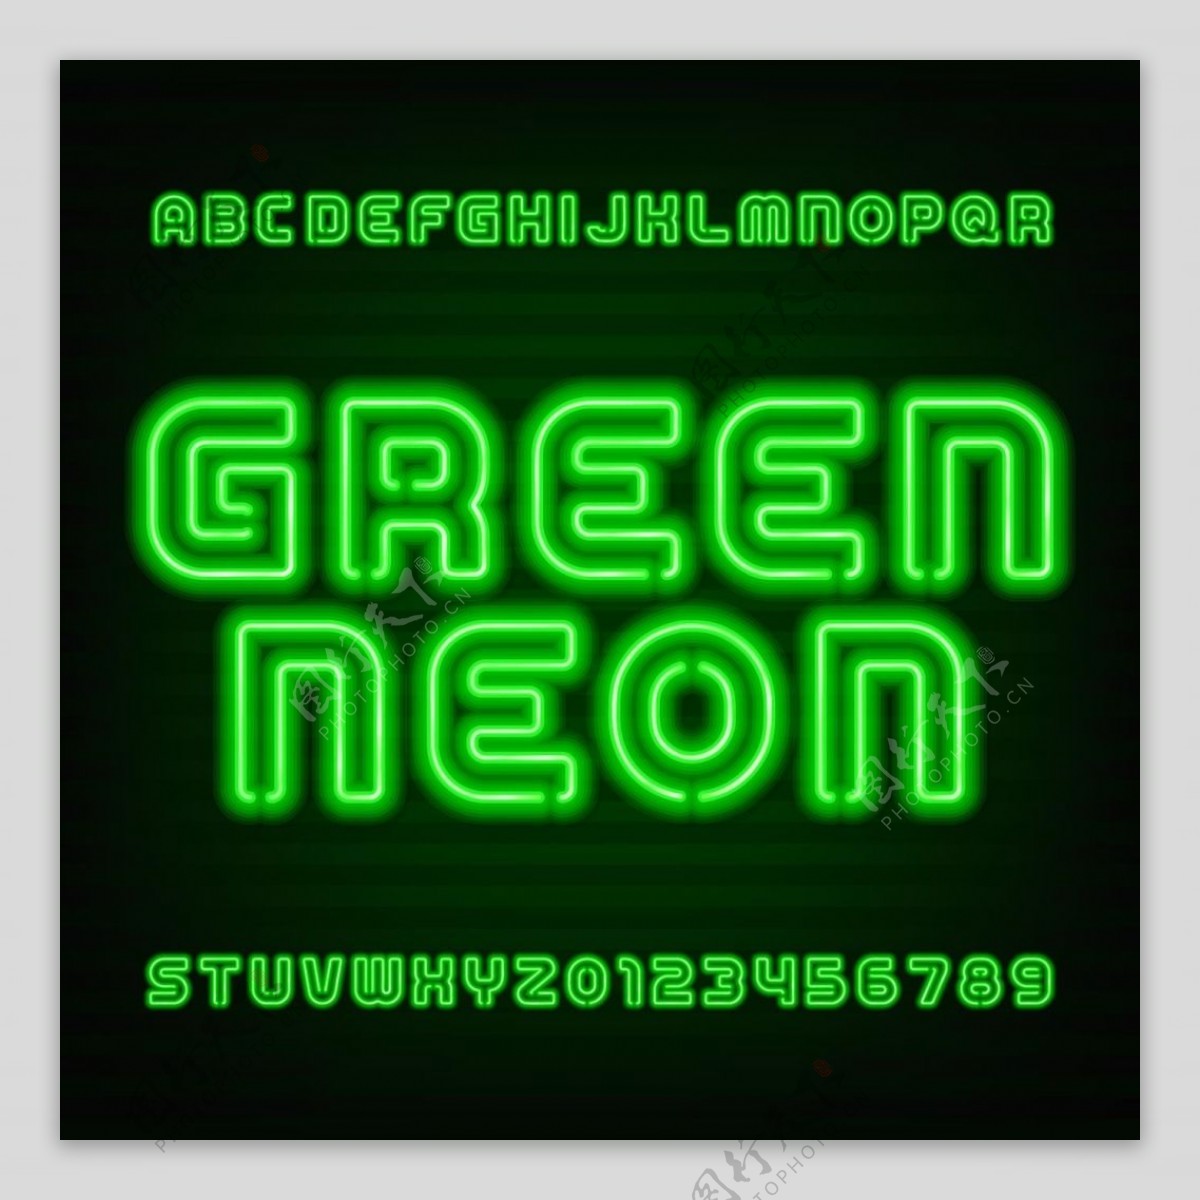 绿色霓虹字体设计矢量素材下载